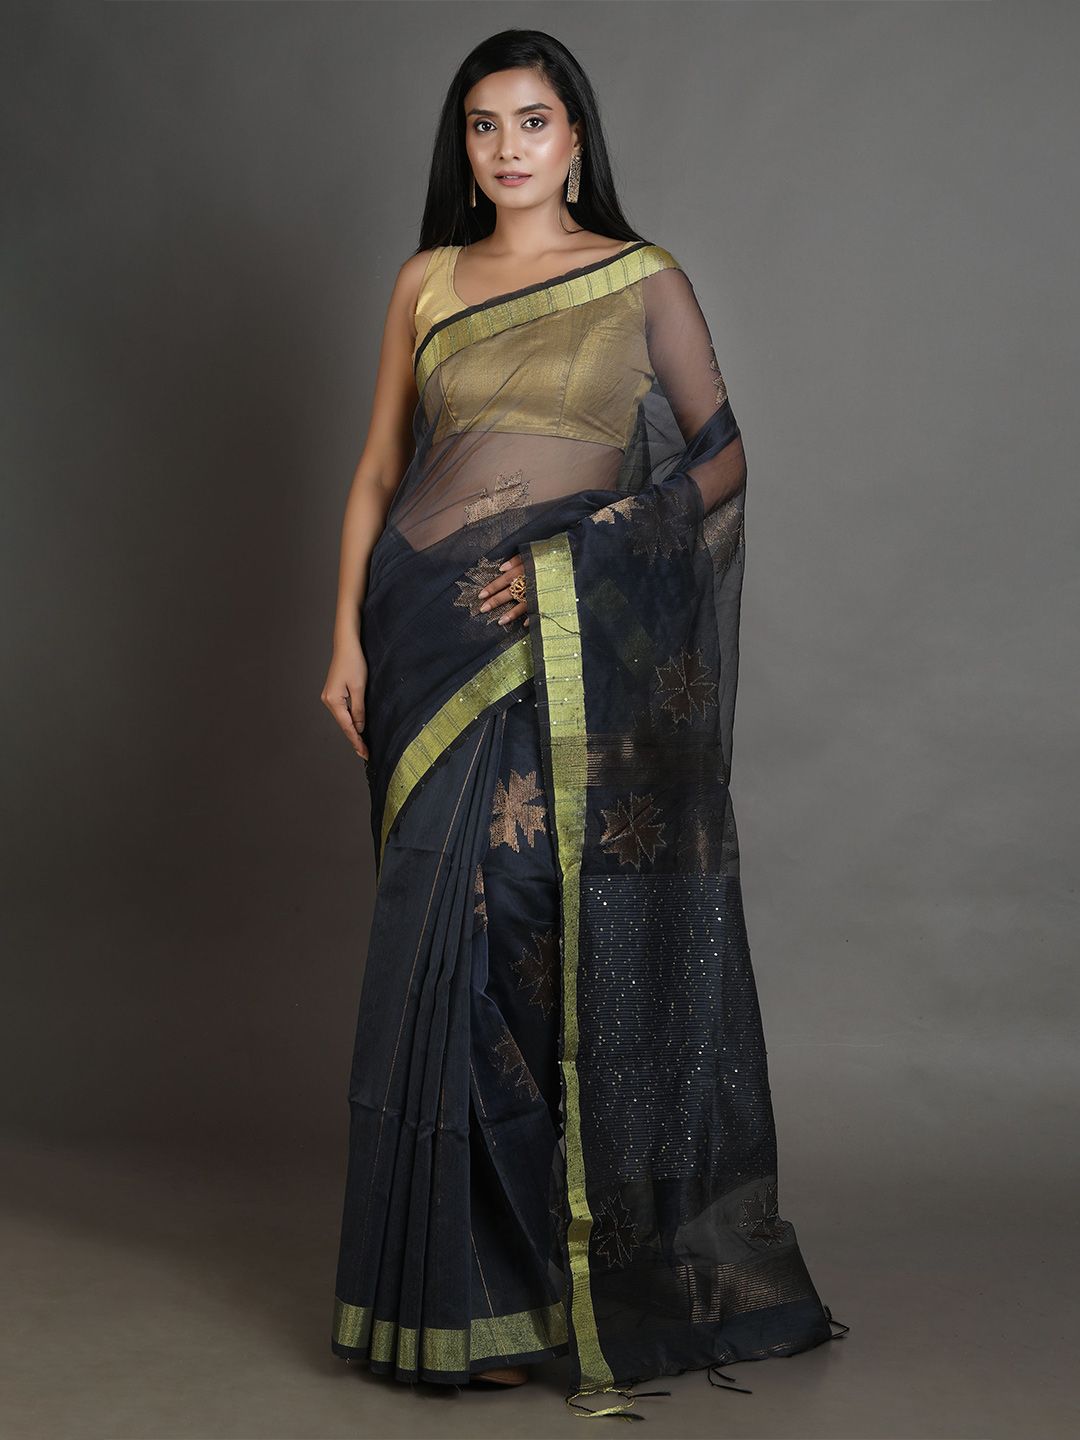 Arhi Black & Golden Woven Design Zari Pure Silk Saree Price in India